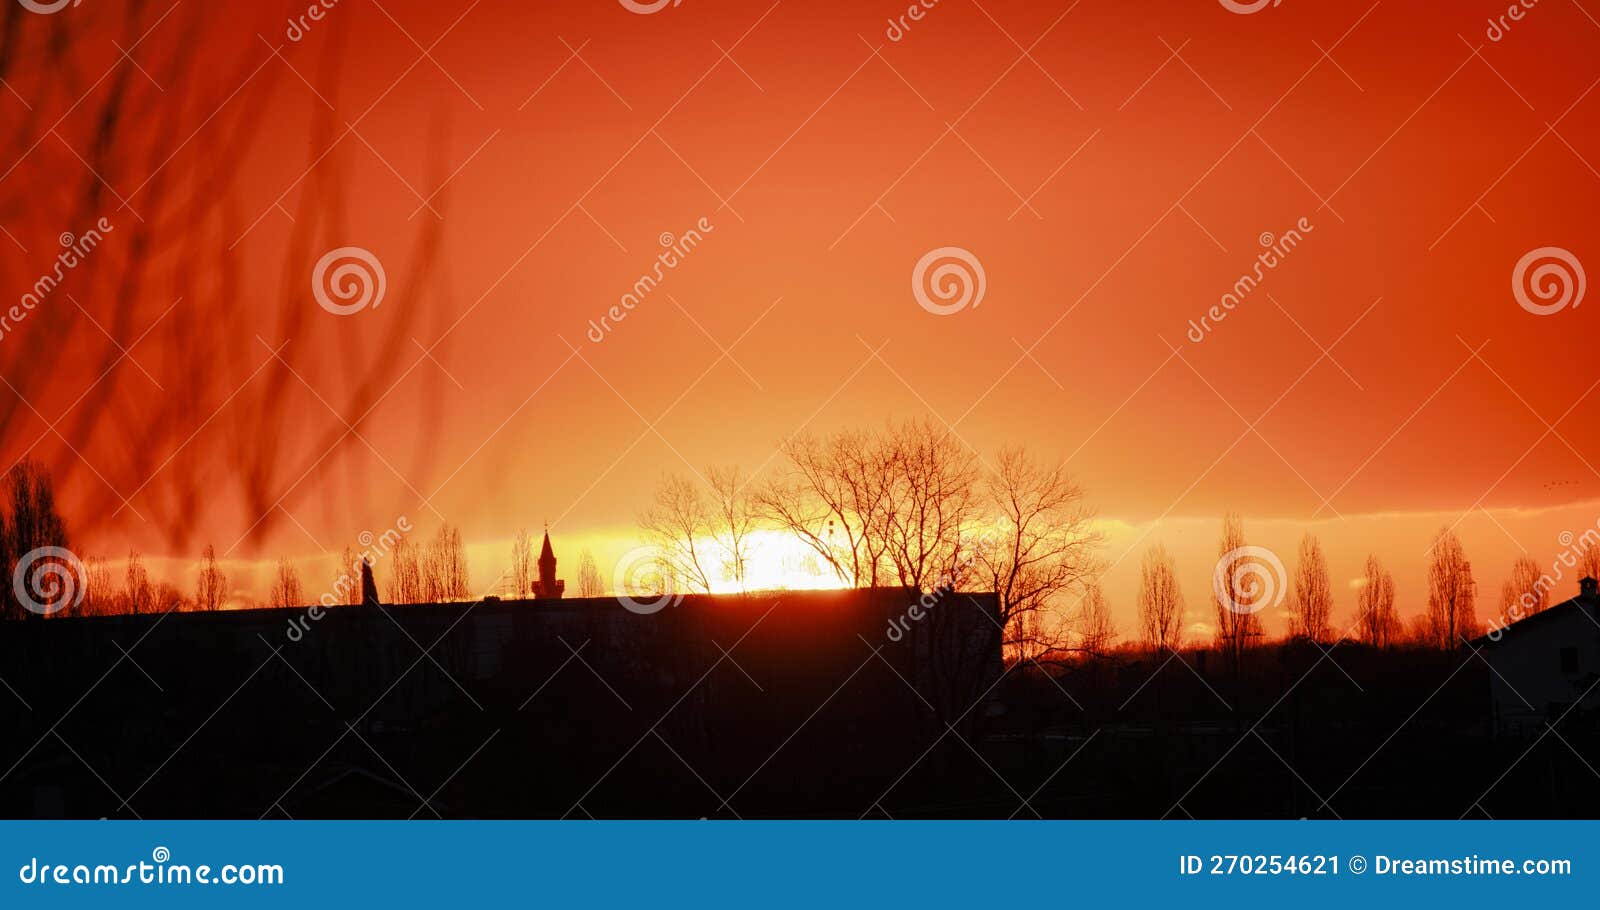 cielo arancione durante l'alba in un 'atmosfera suggestiva con legno e edificio in controluce